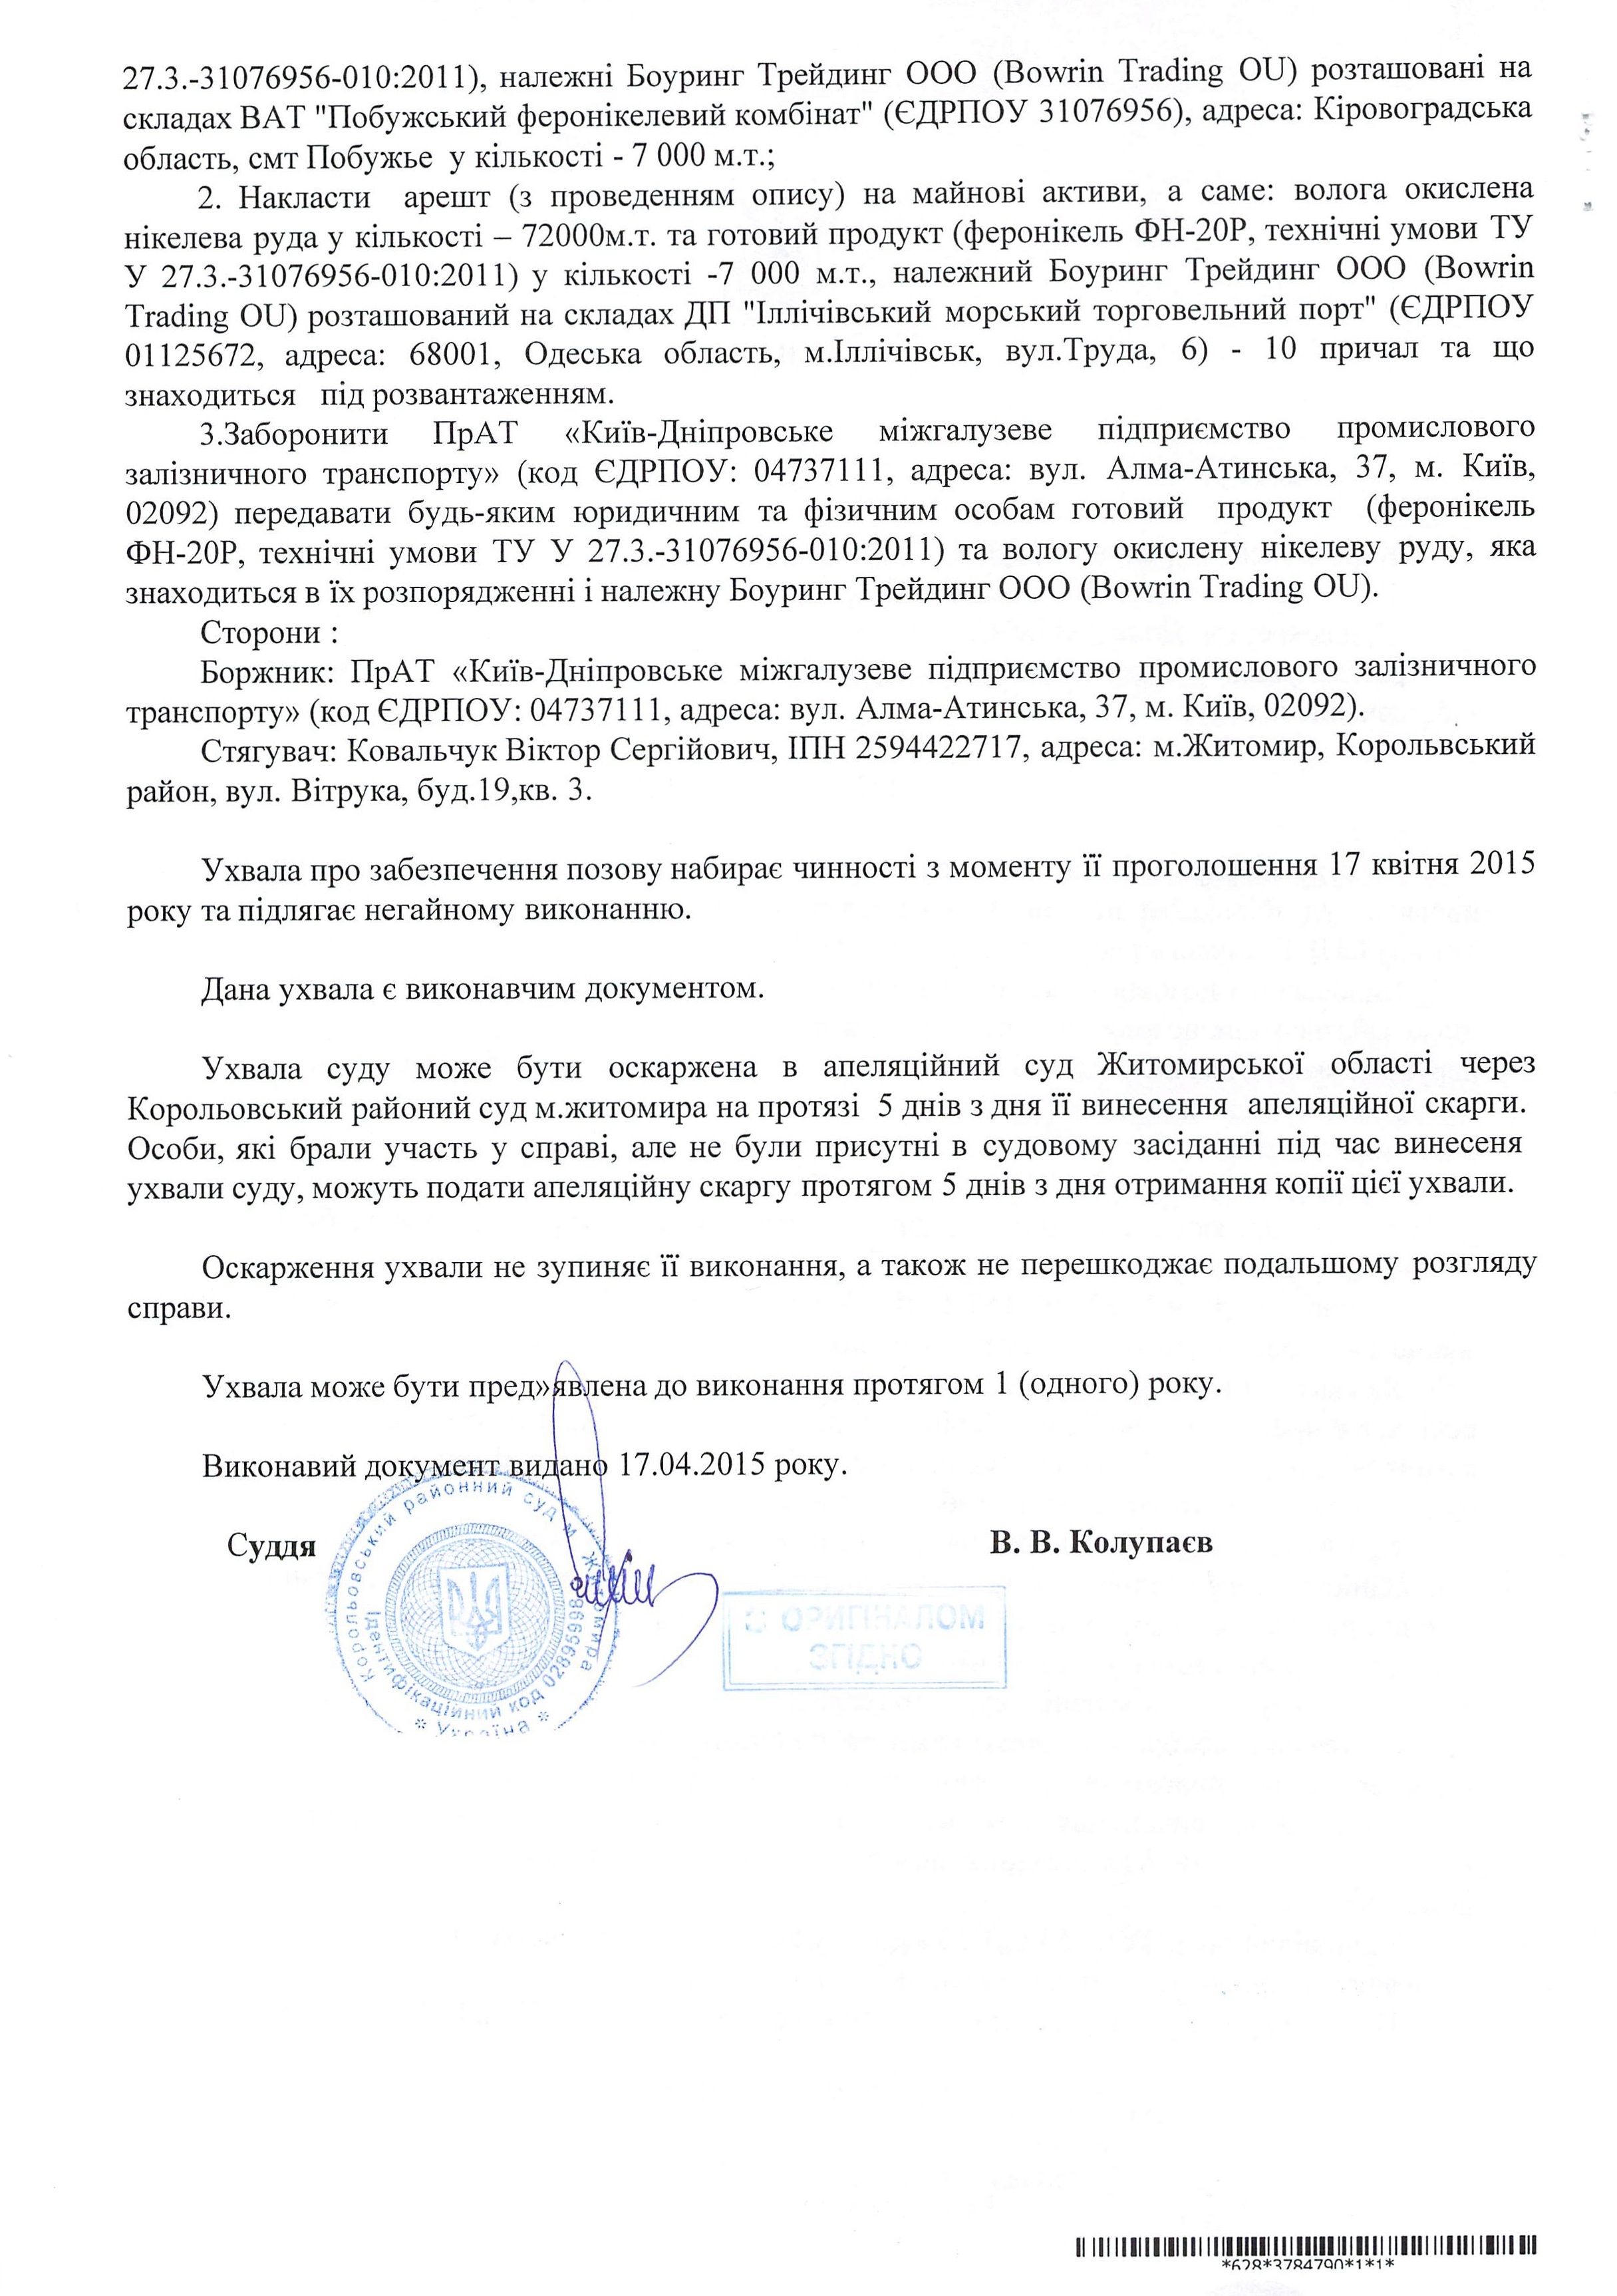 Судья Житомирского райсуда и физическое лицо - житель Житомира хотят заблокировать работу рудного терминала Ильичевского порта